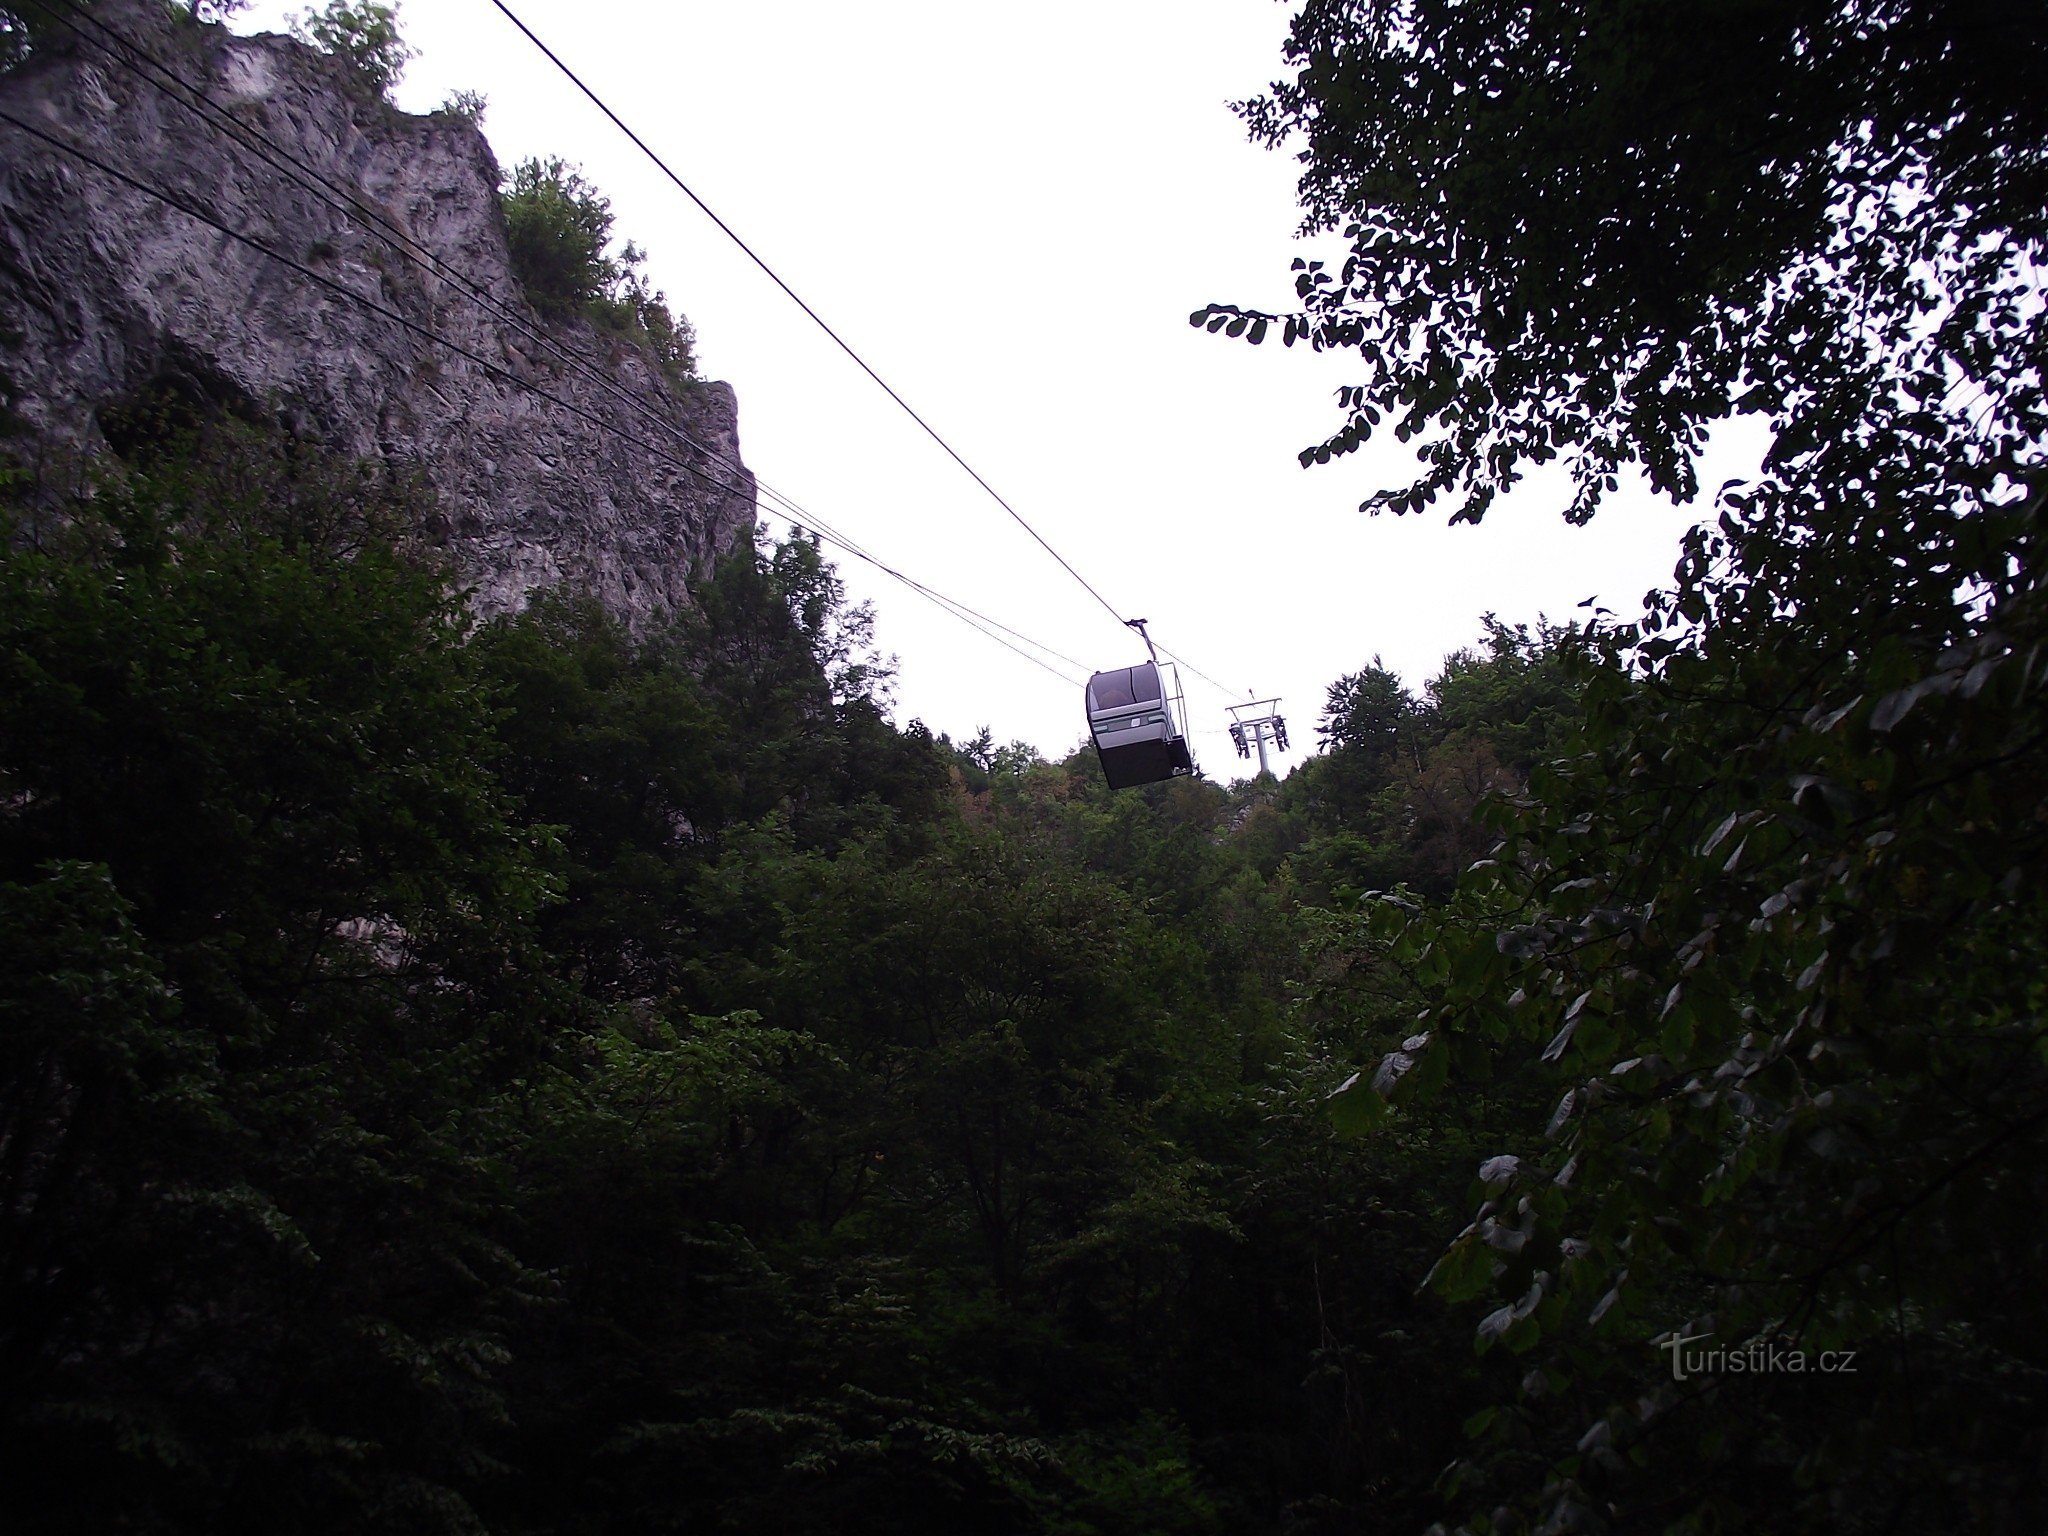 Τελεφερίκ μεταξύ των σπηλαίων Macocha και Punkevní